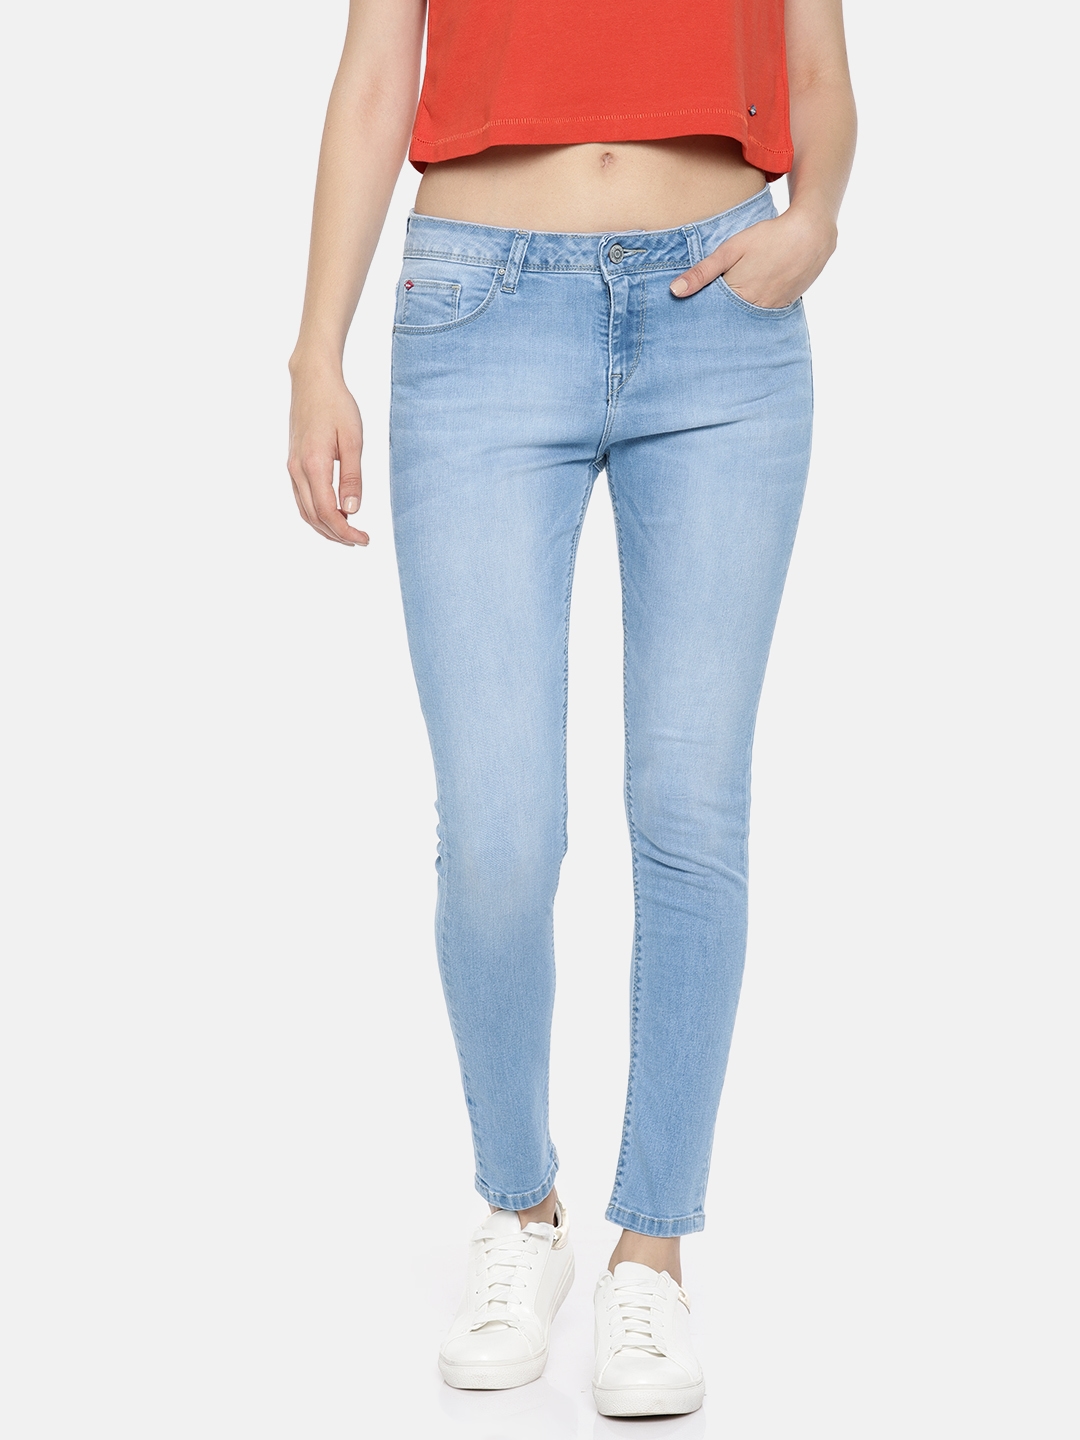 designer jean shorts